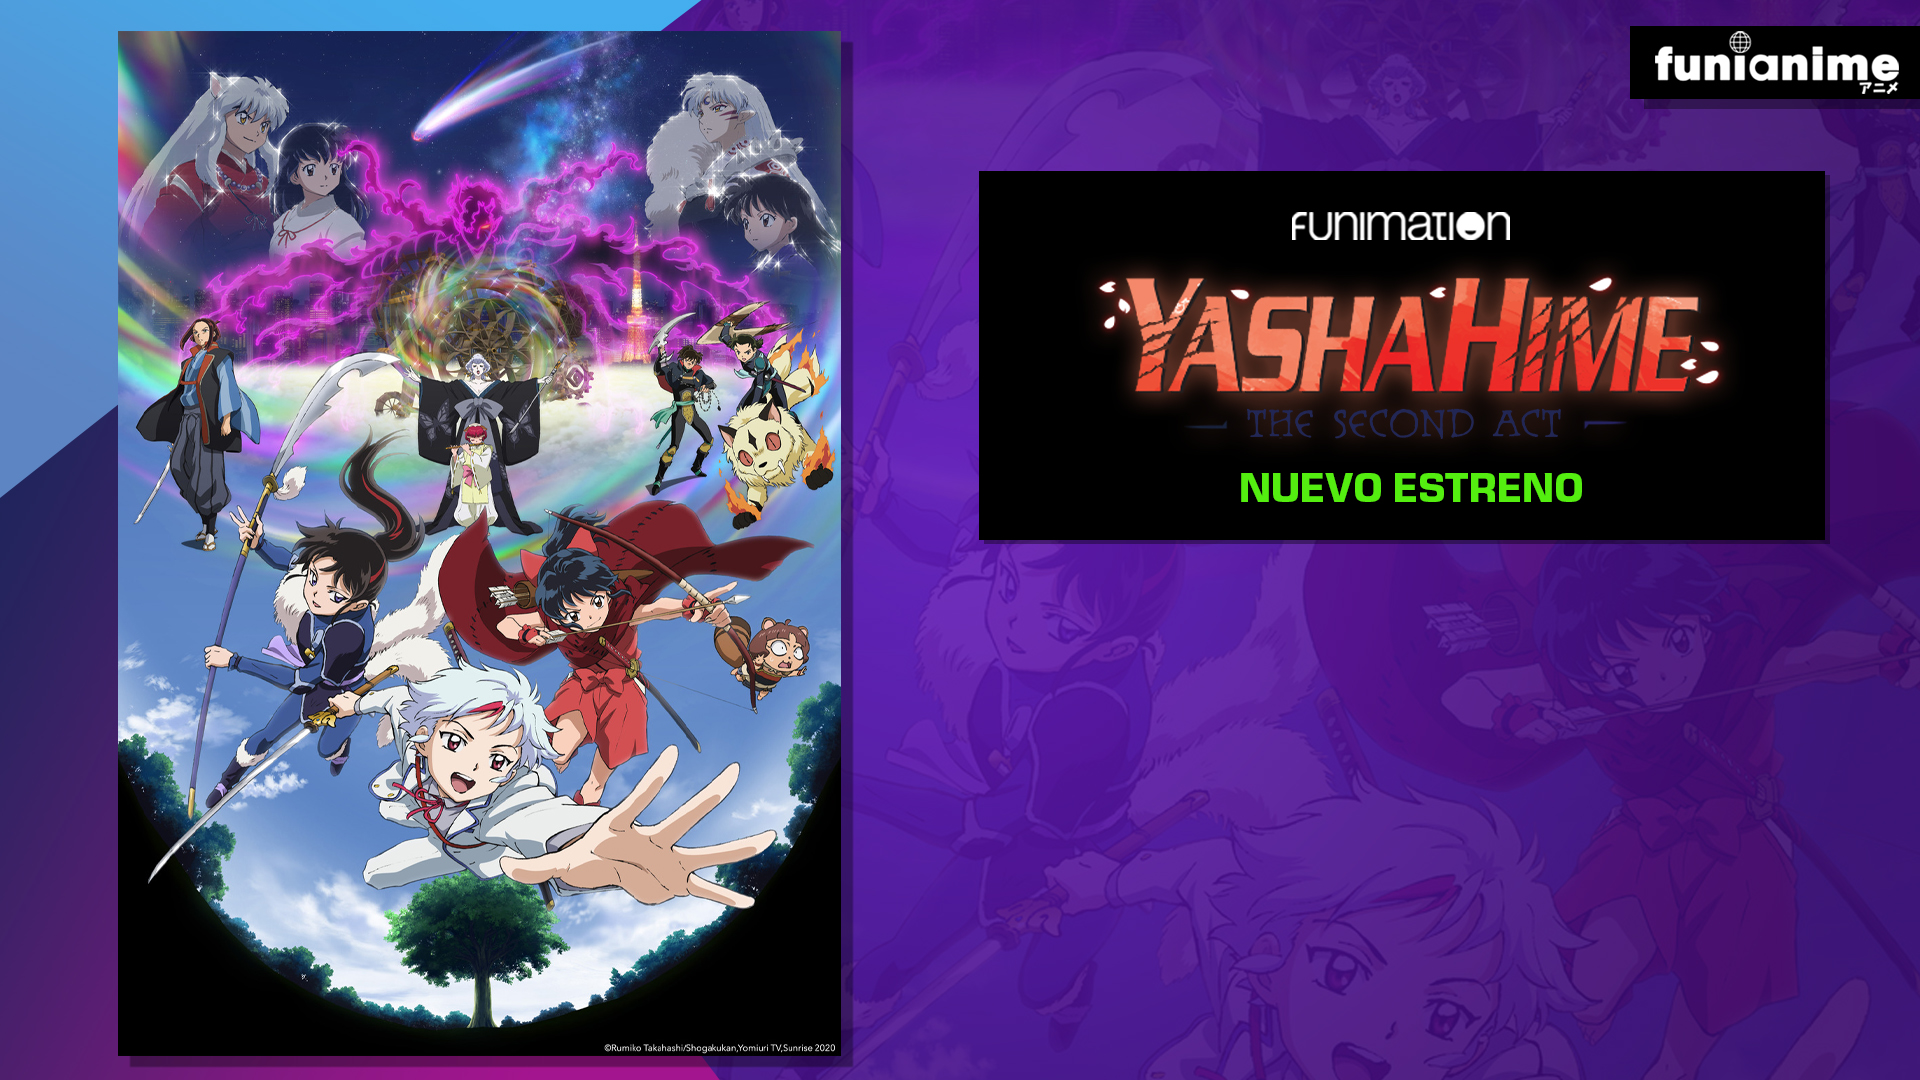 Hanyo no Yashahime 2 tendrá una emisión SimulDub en Funimation